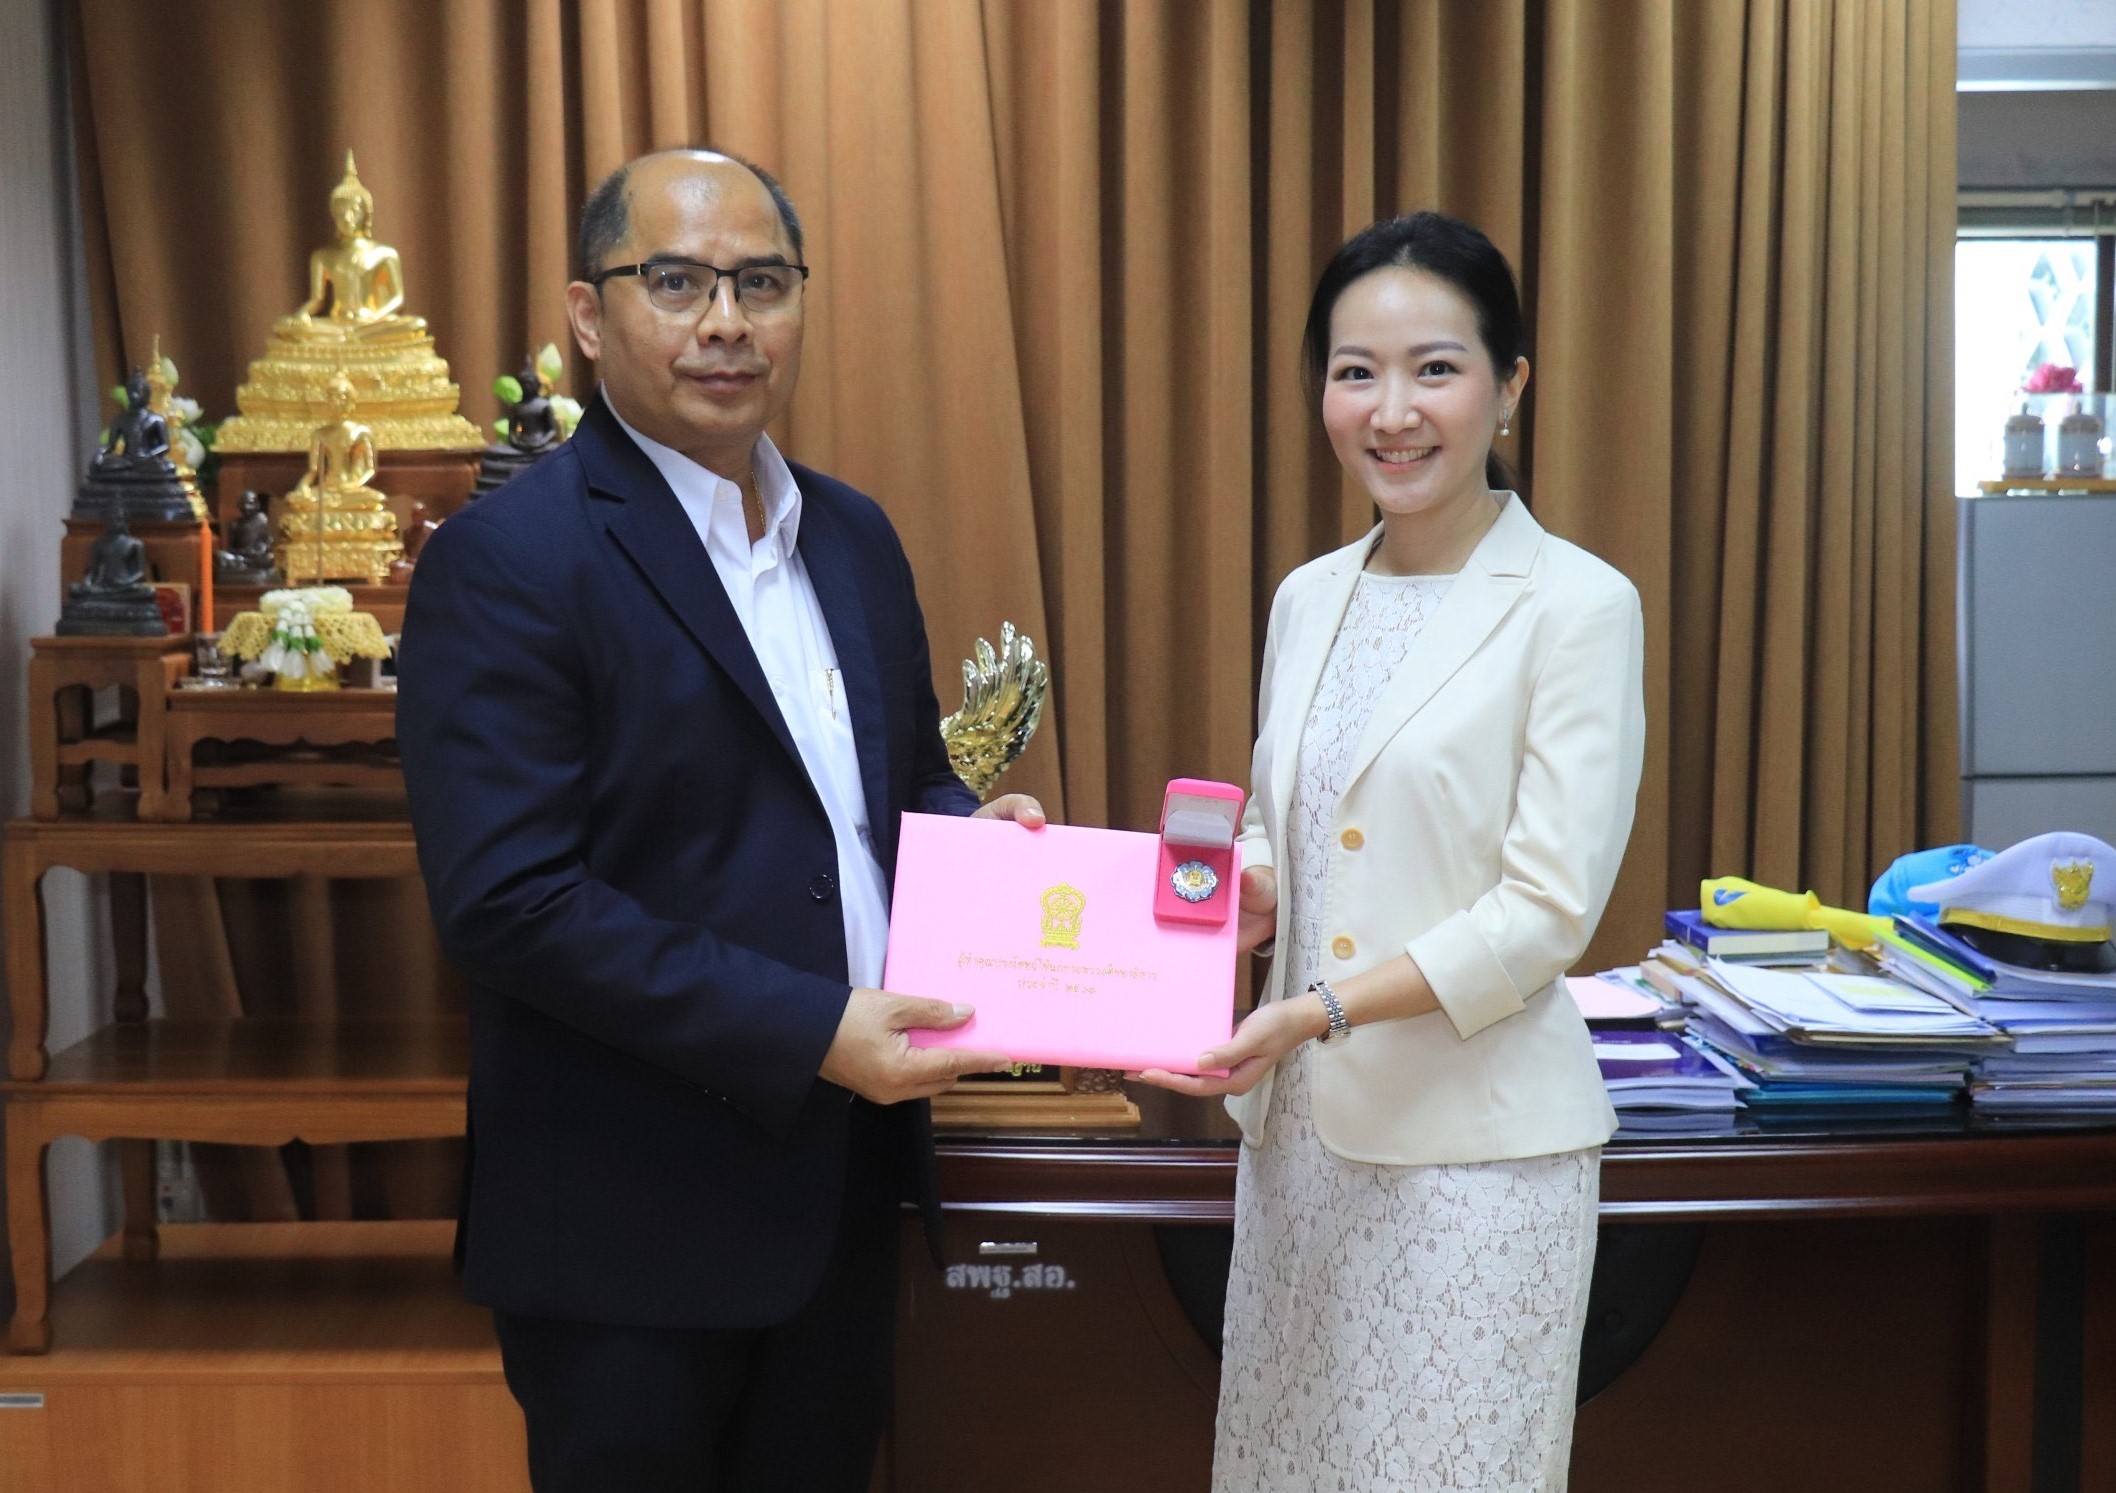 มอนเดลีซ ประเทศไทย รับรางวัลผู้ทำคุณประโยชน์แก่กระทรวงศึกษาธิการ ประจำปี 2563 ในฐานะกำลังสำคัญสนับสนุนภาคการศึกษาไทย ผ่านโครงการโรงเรียนสุขหรรษา (Joy Schools)